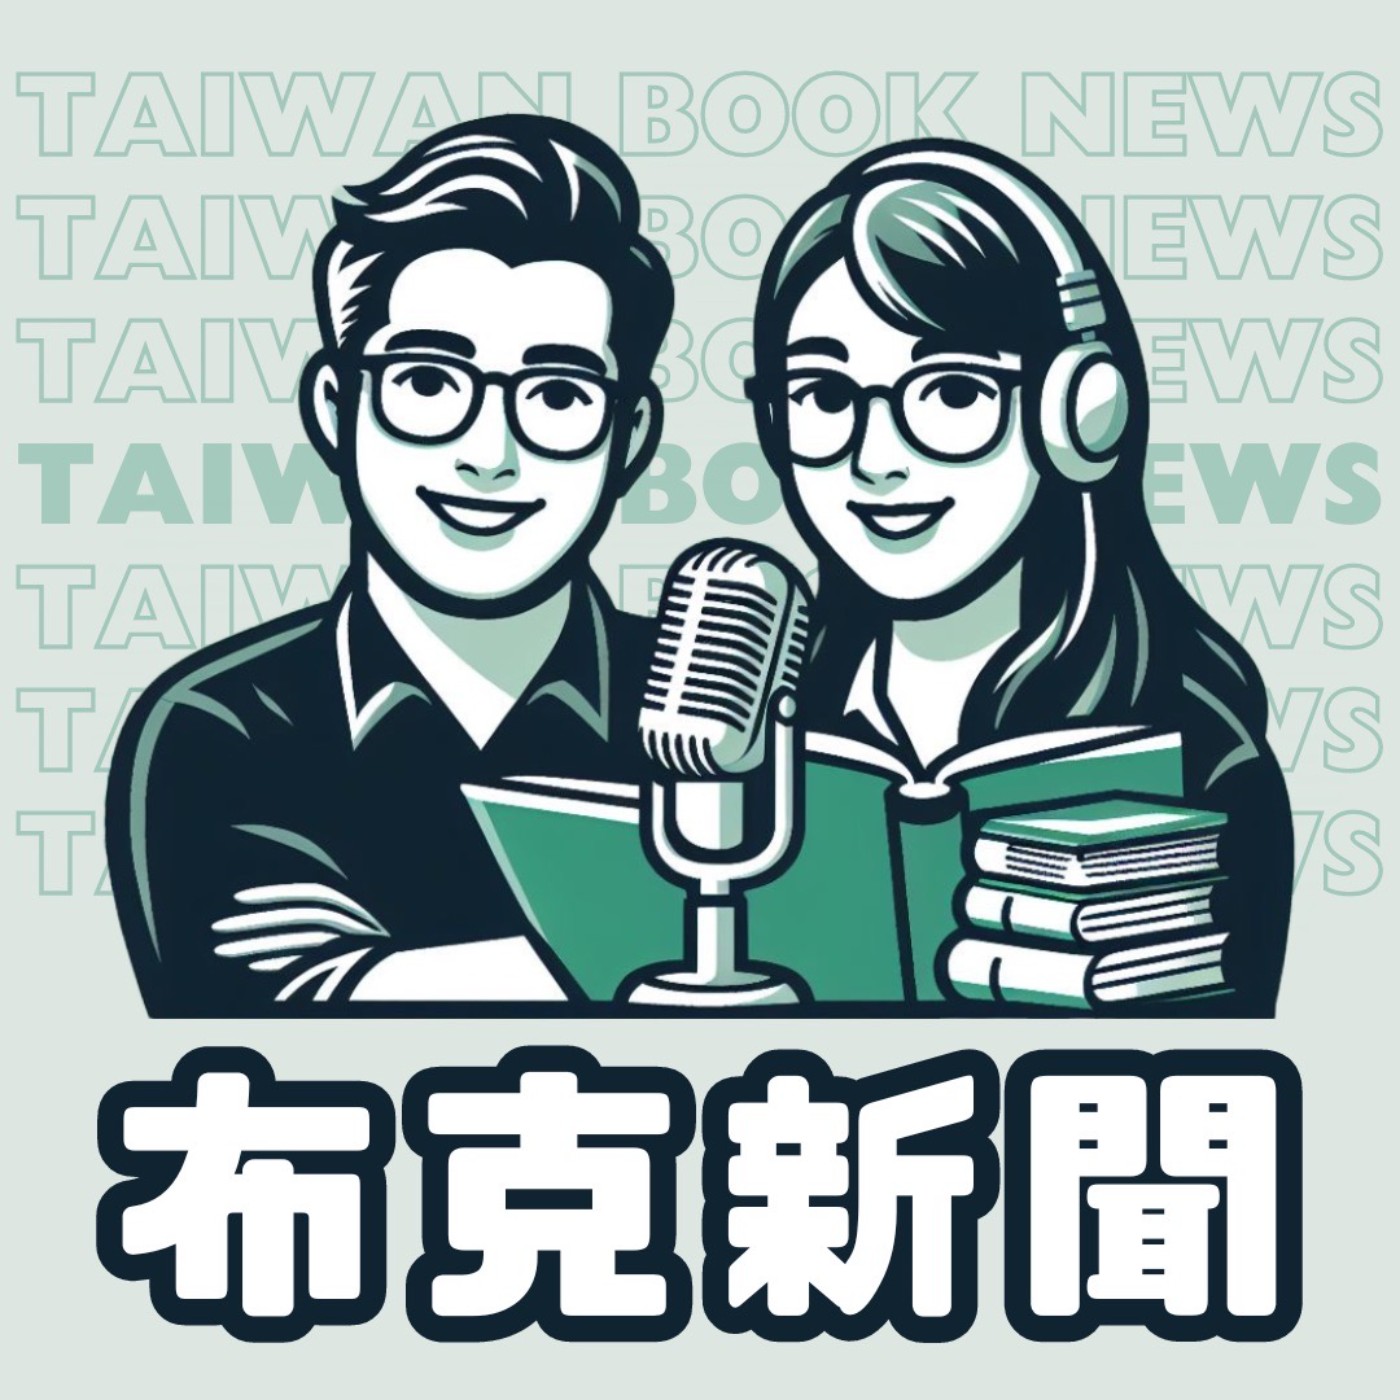 布克新聞 Taiwan Book News S5EP06：裝潢你的我的房東的家